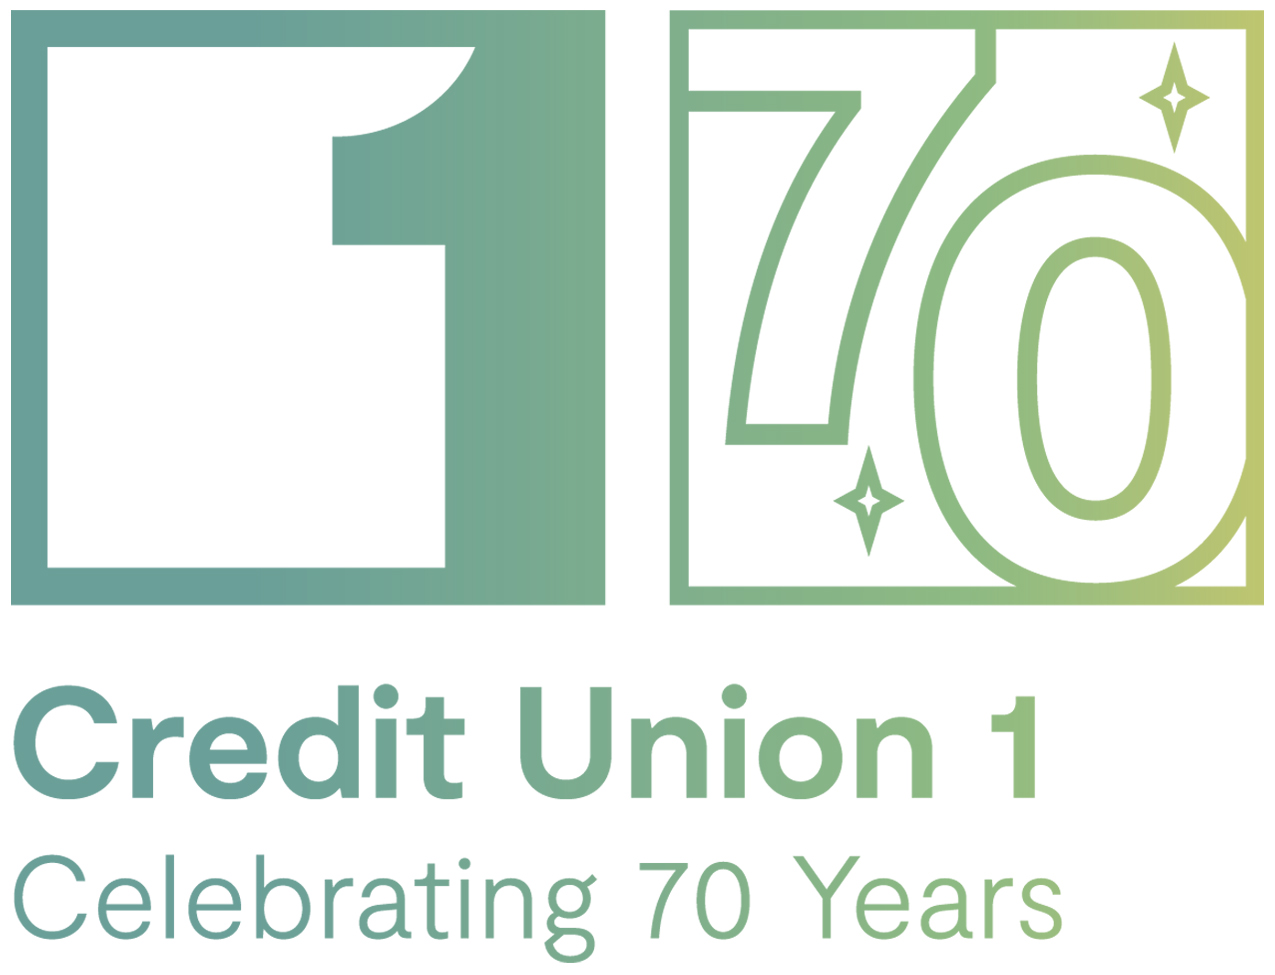 Credit Union 1 Celebrating 70 years logo